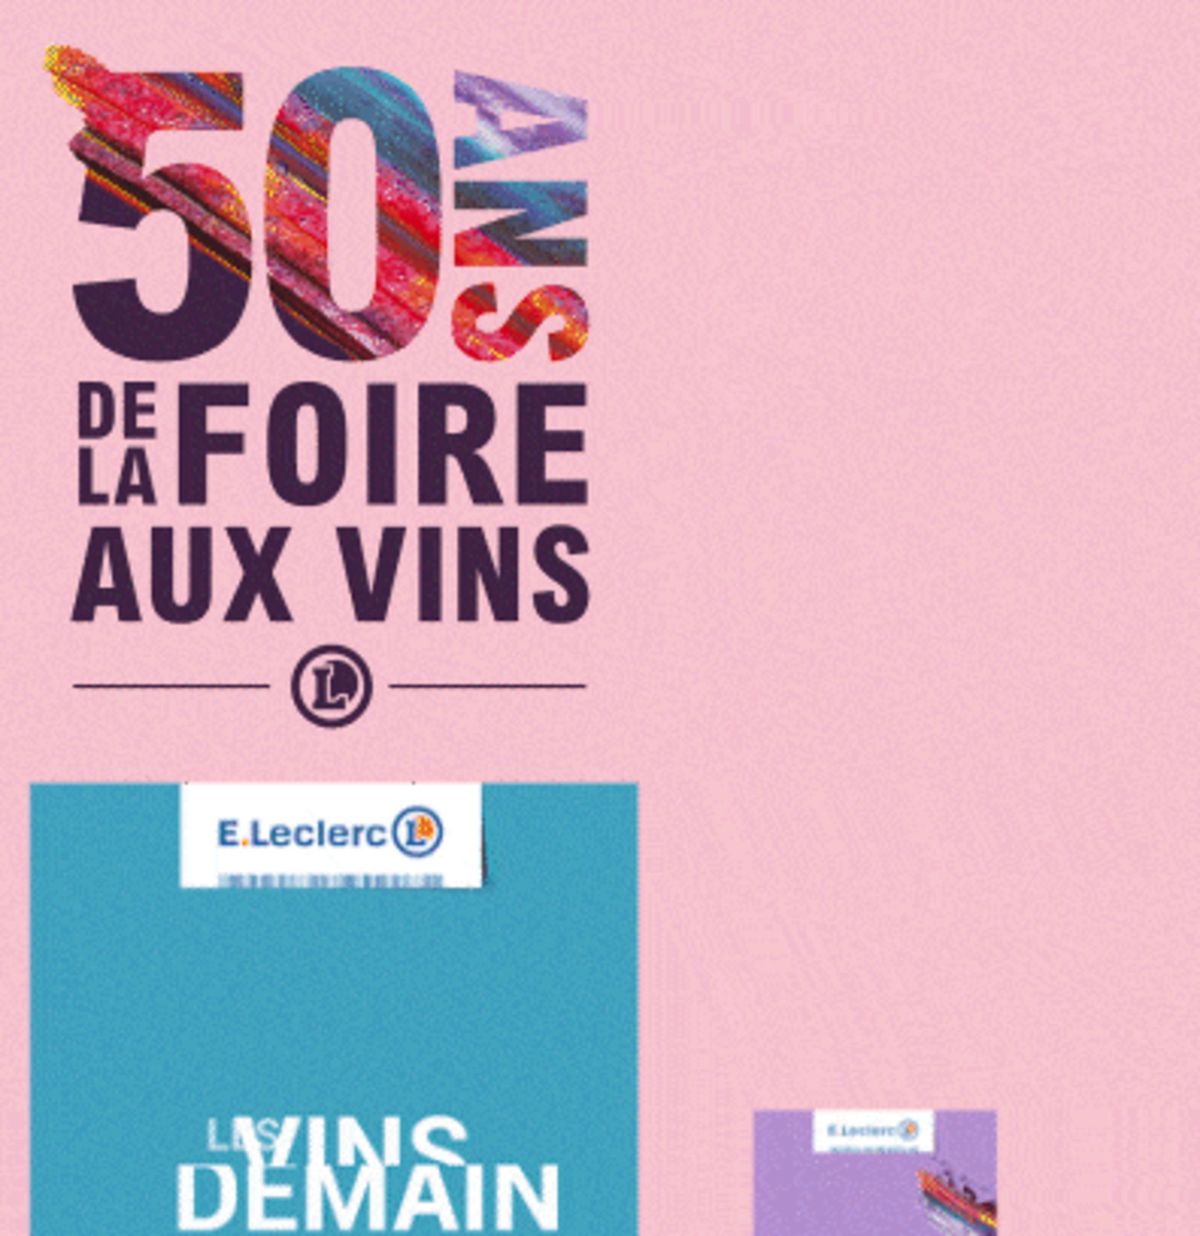 Catalogue Foire Aux Vins - Mixte, page 01141